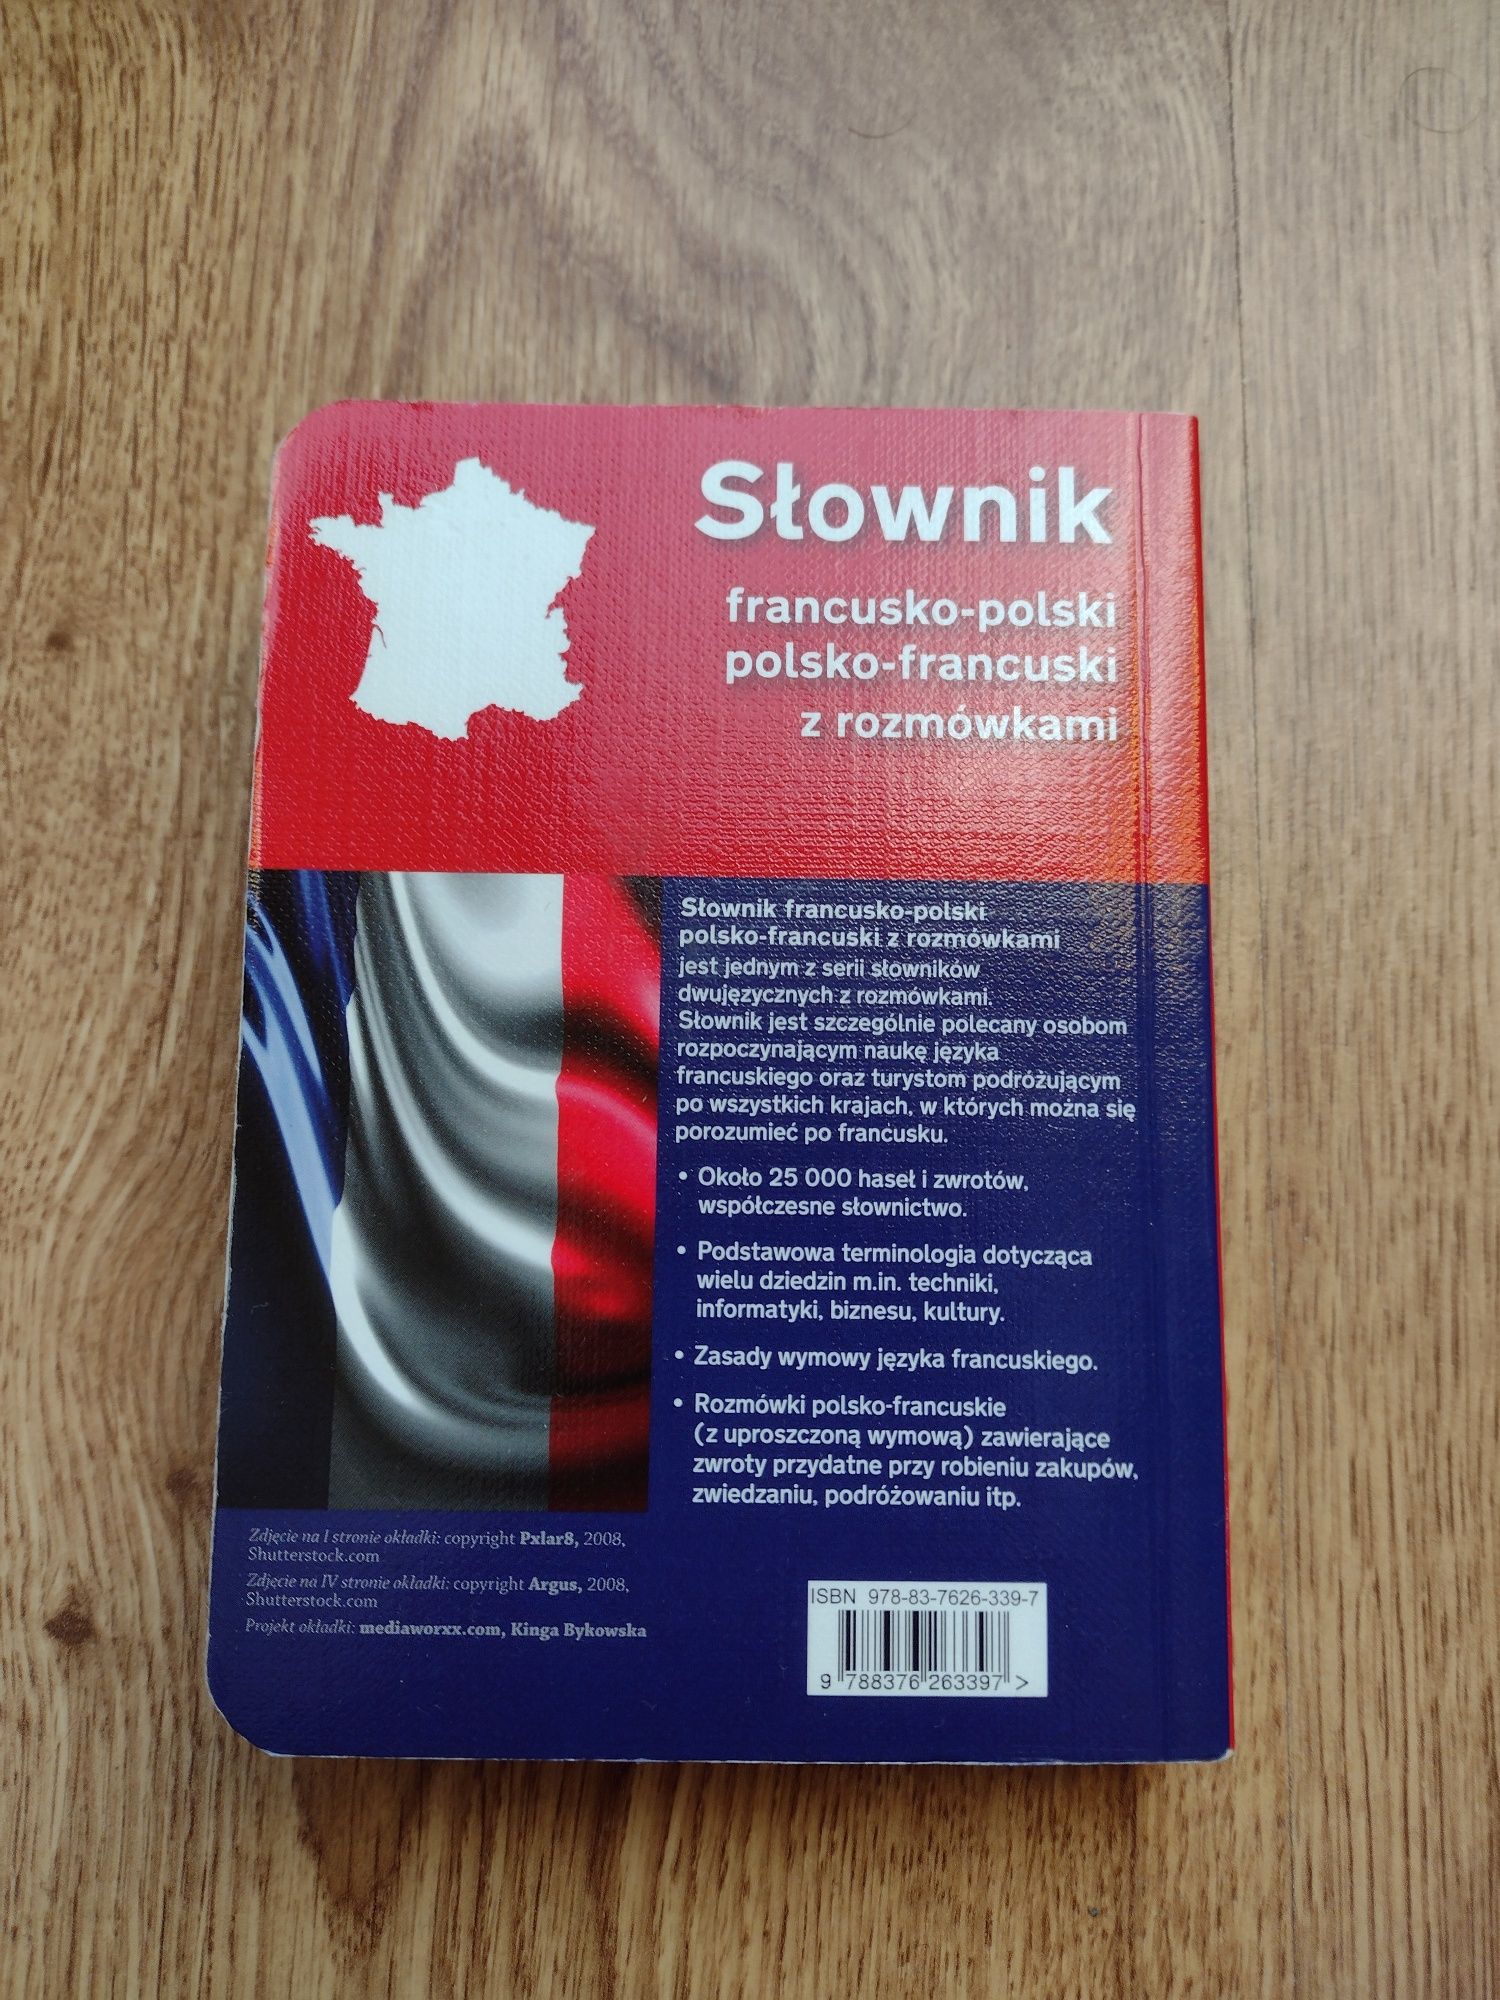 Słownik z rozmówkami (francusko-polski, polsko-francuski)